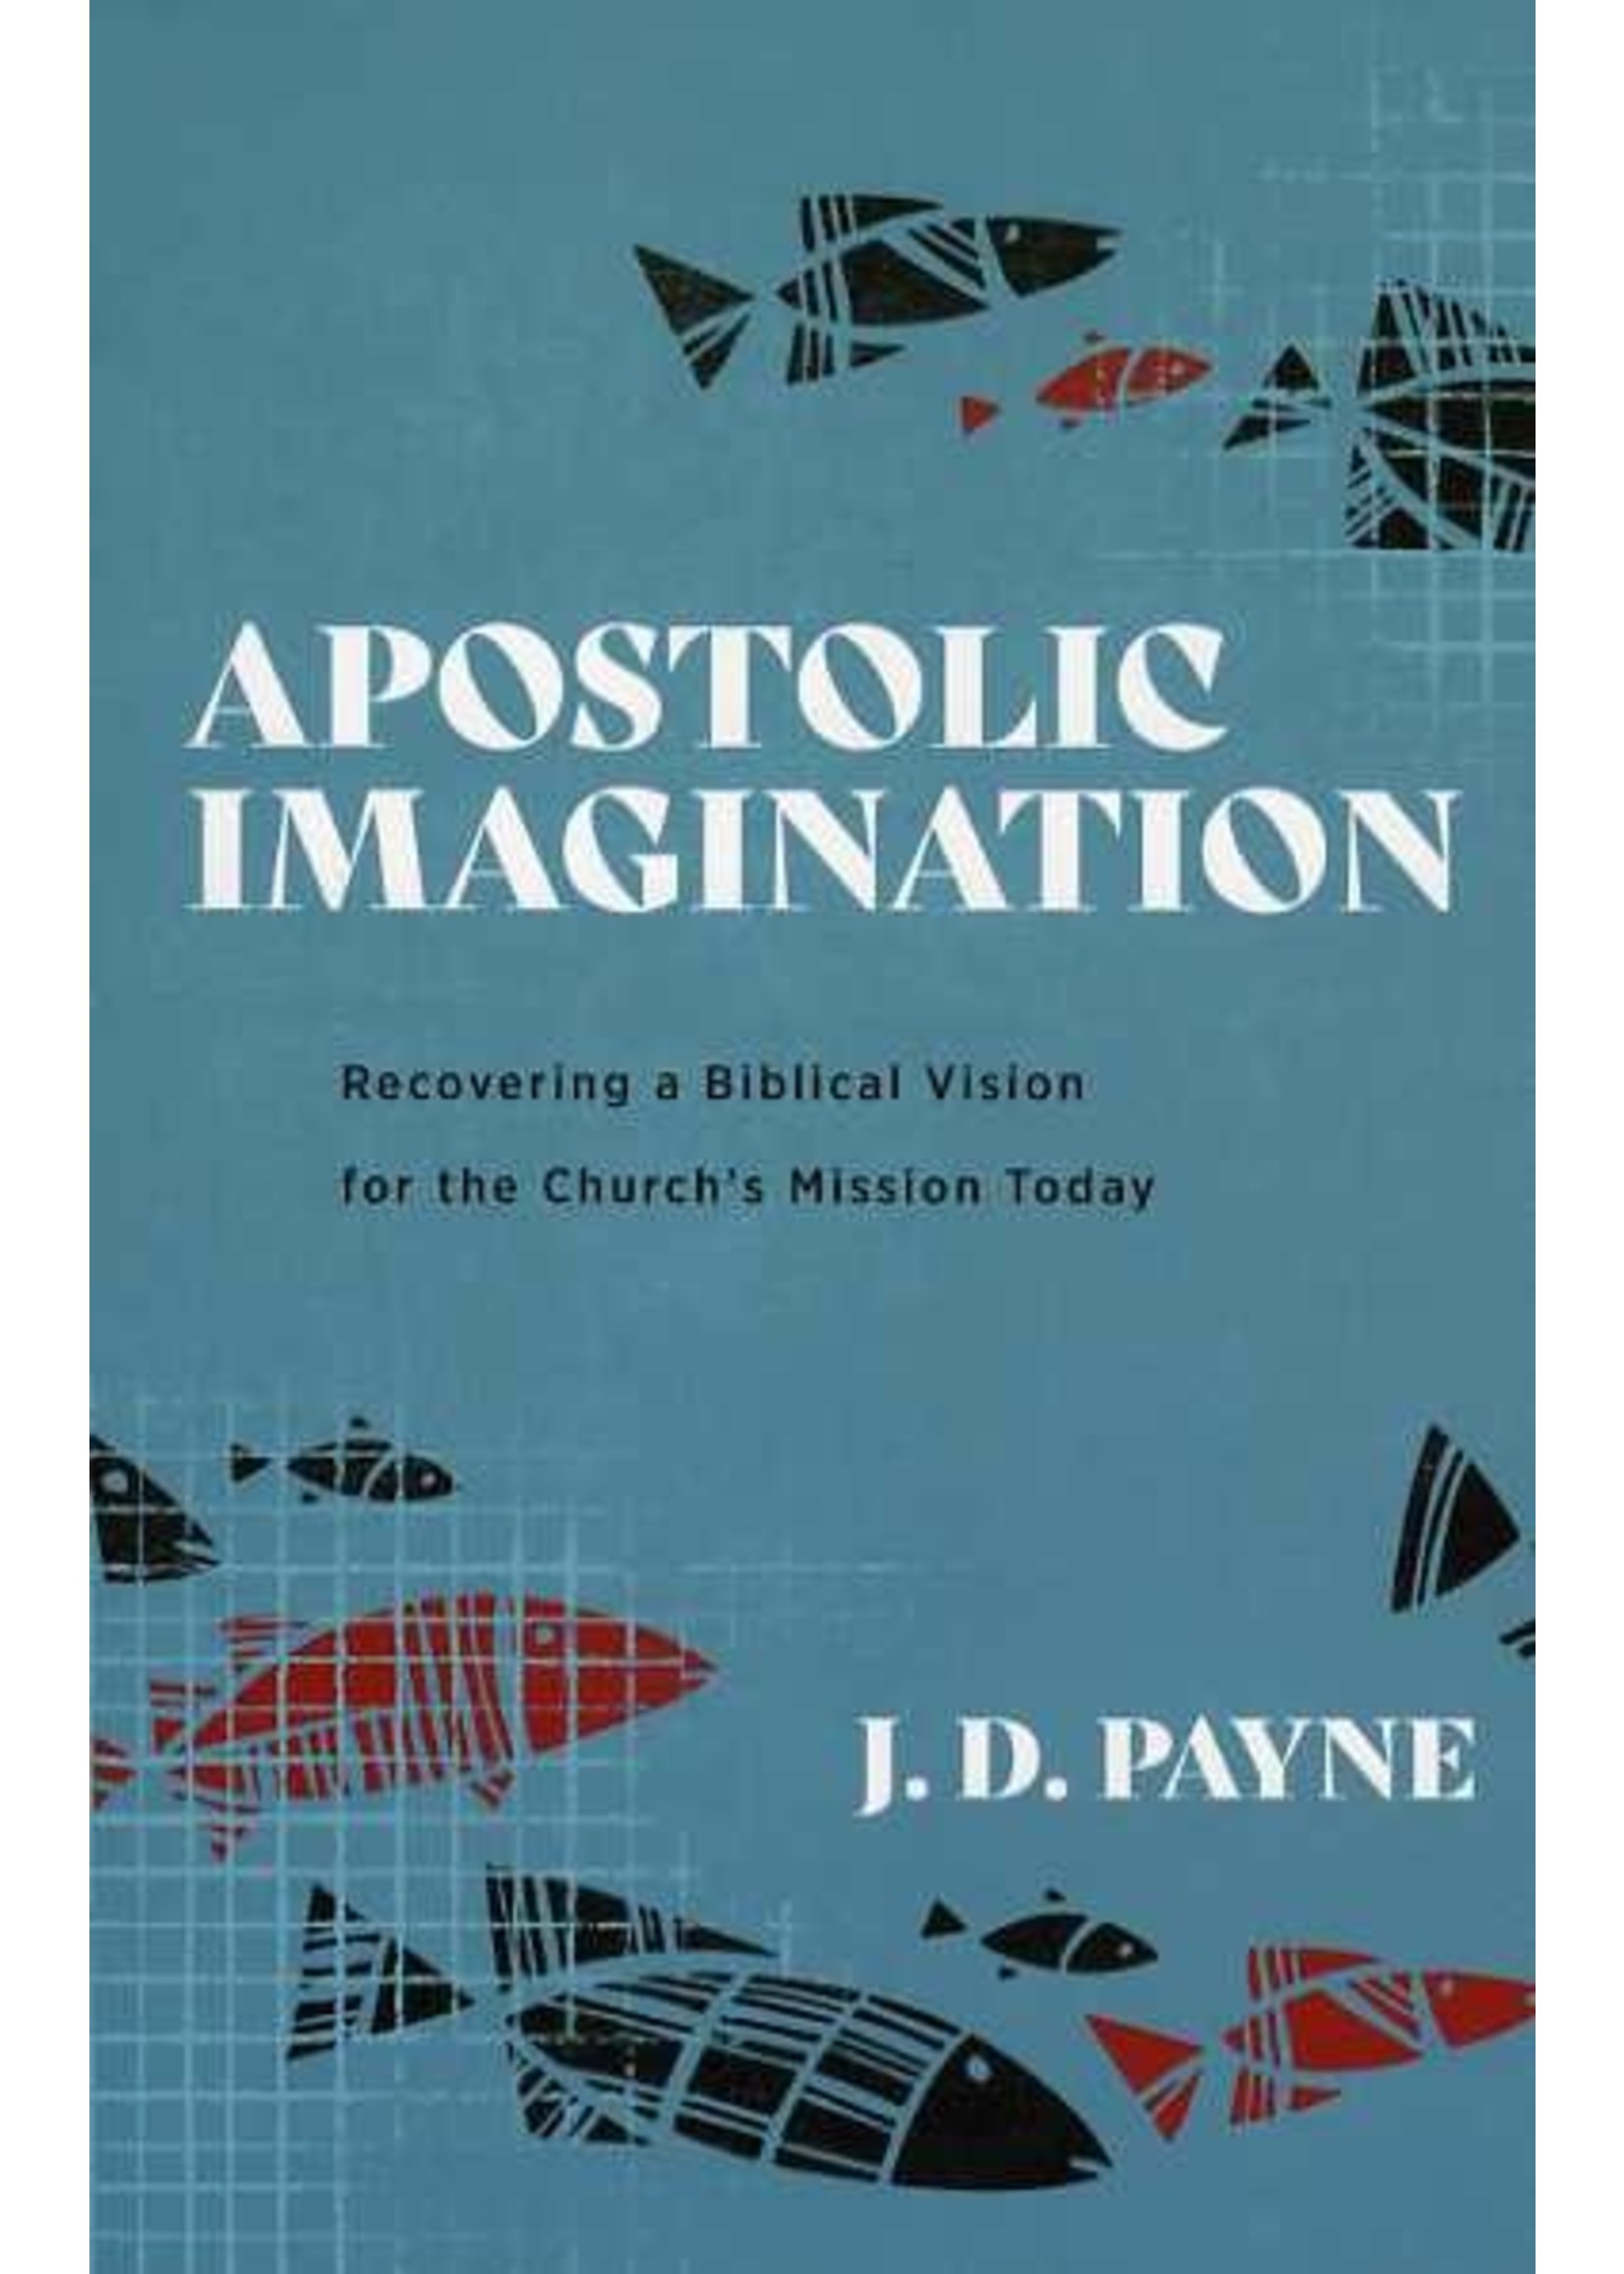 Baker Publishing Apostolic Imagination - J. D. Payne